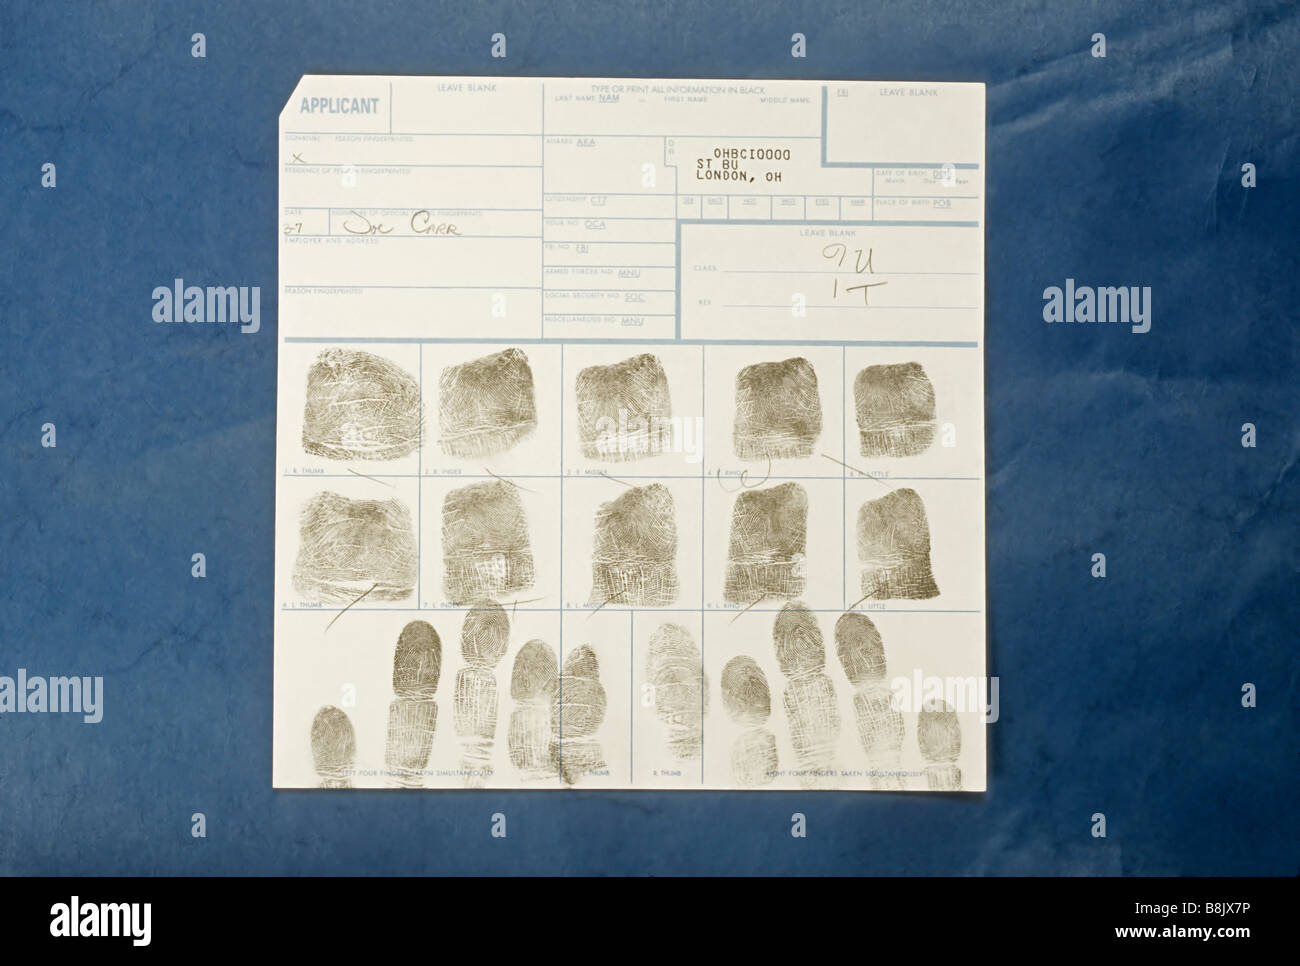 Impronte digitali dalla polizia blotter, la criminalità e la giustizia penale, Londra, Ohio Foto Stock